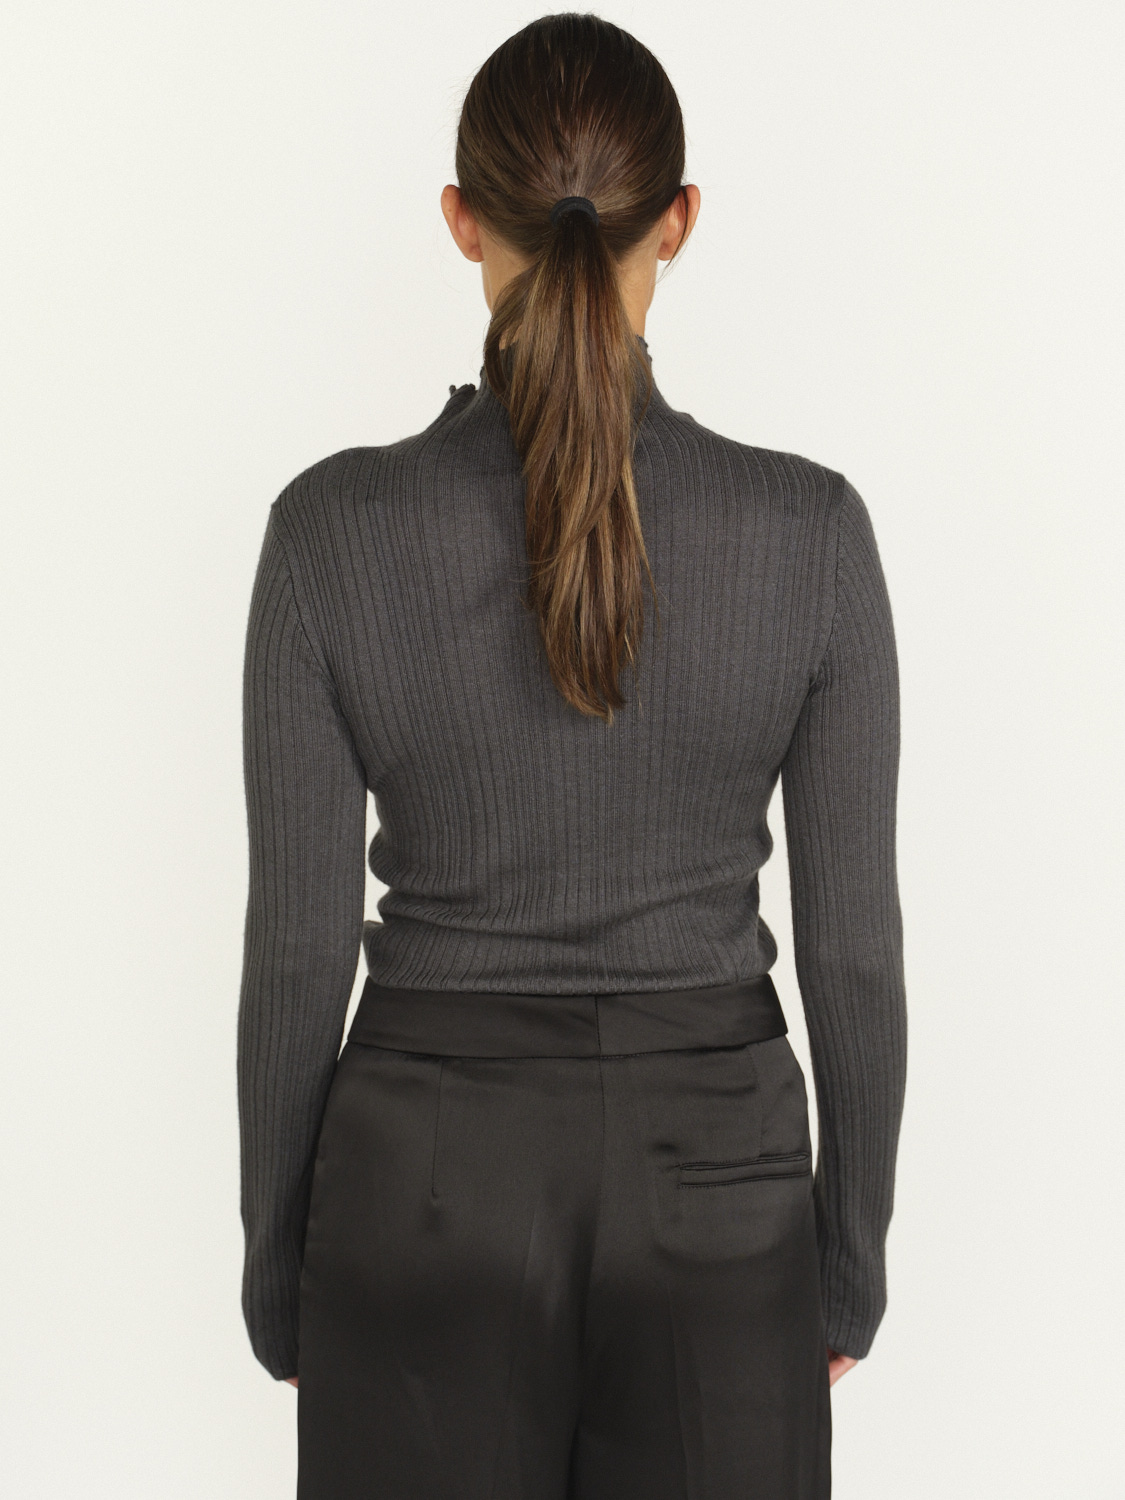 Iris von Arnim Cashmere Silk Sweater - Ripp-Pullover aus Kaschmir und Seide   grau M